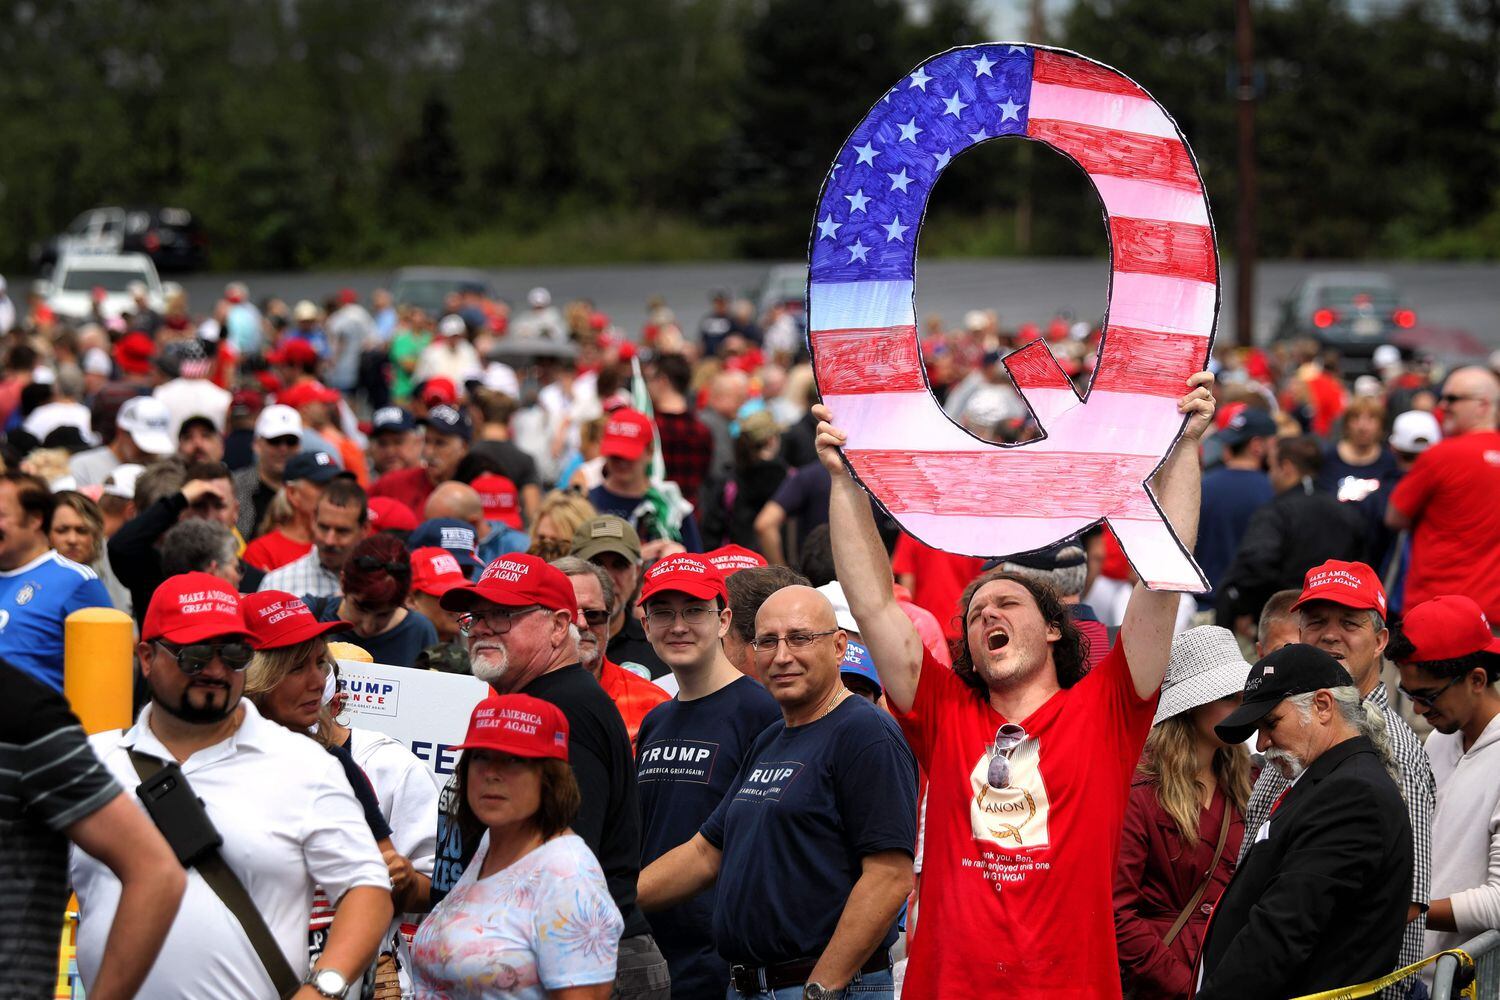 Un asistente a un mitin de Donald Trump en agosto de 2018 en Pensilvania sostiene una enorme "Q", símbolo del movimiento QAnon.